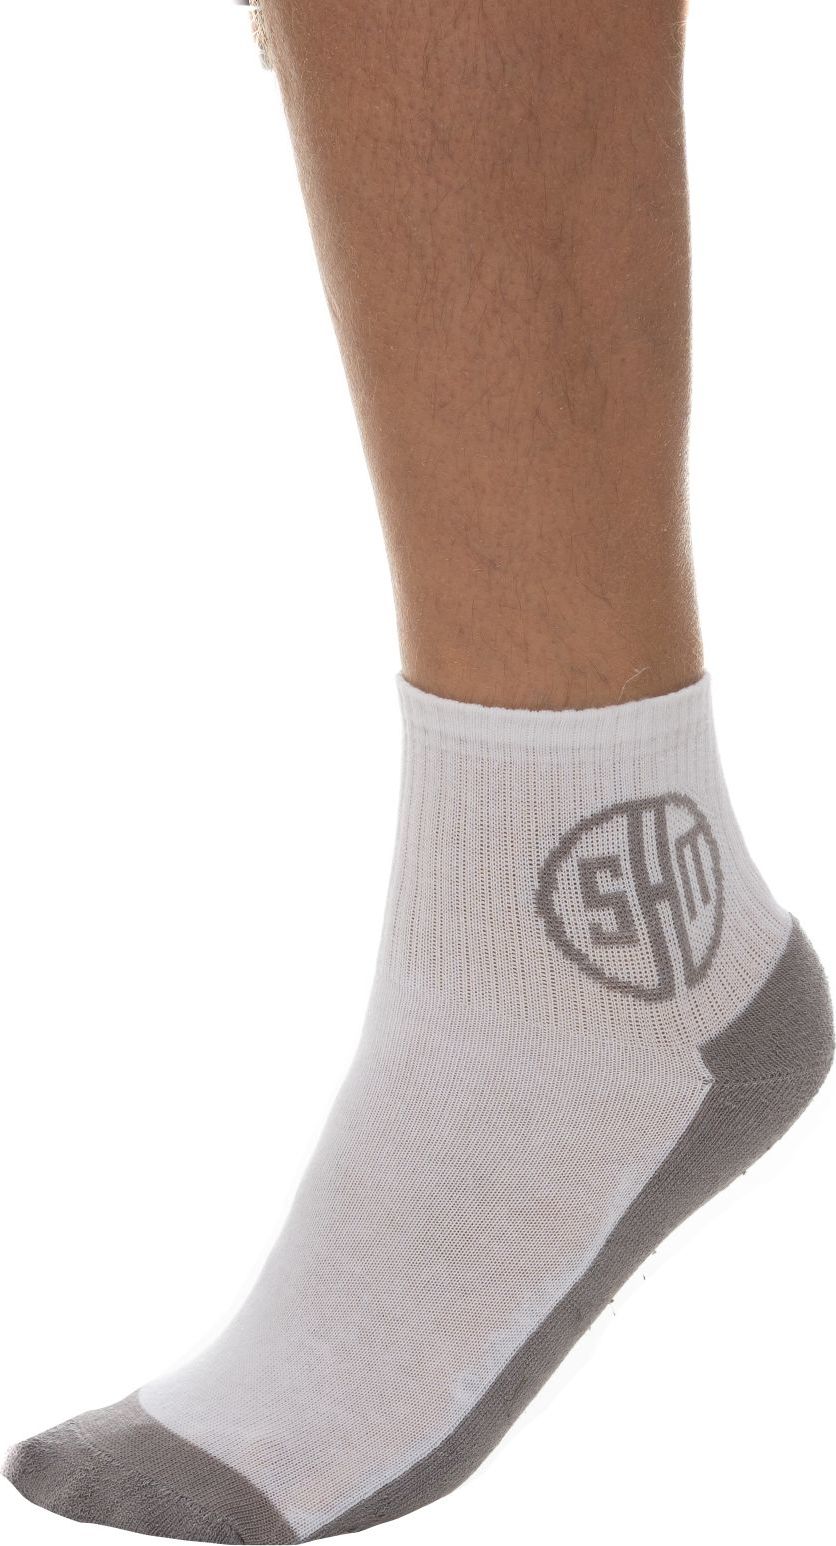 Ponožky SAM 73 Topeka bílé Velikost: 39-42